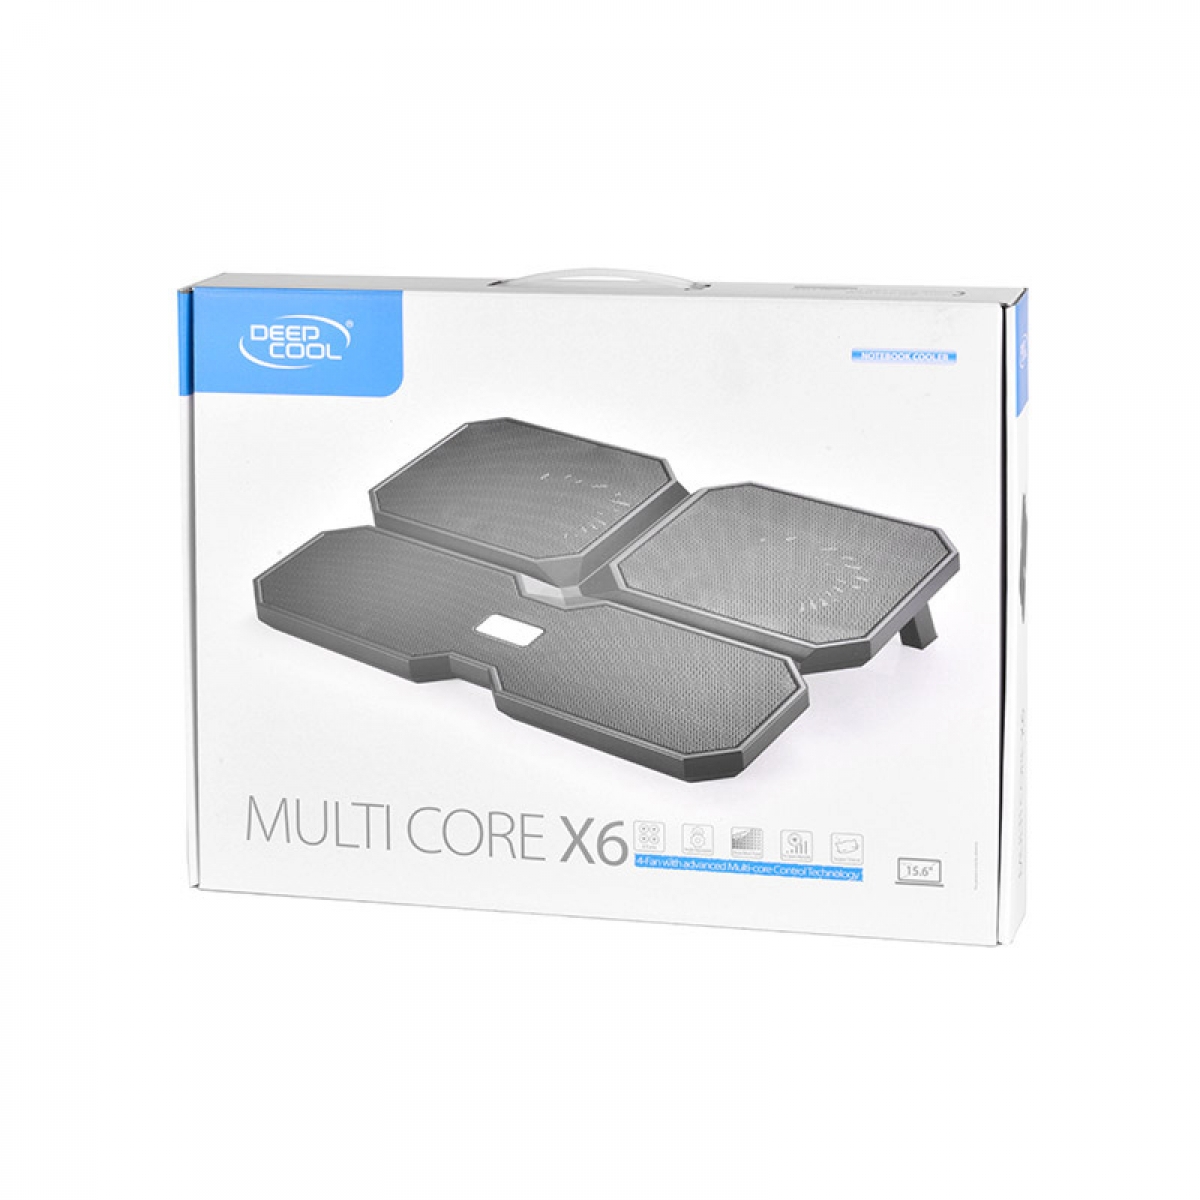 خنک کننده لپ تاپ دیپ کول Deepcool Multi Core X6